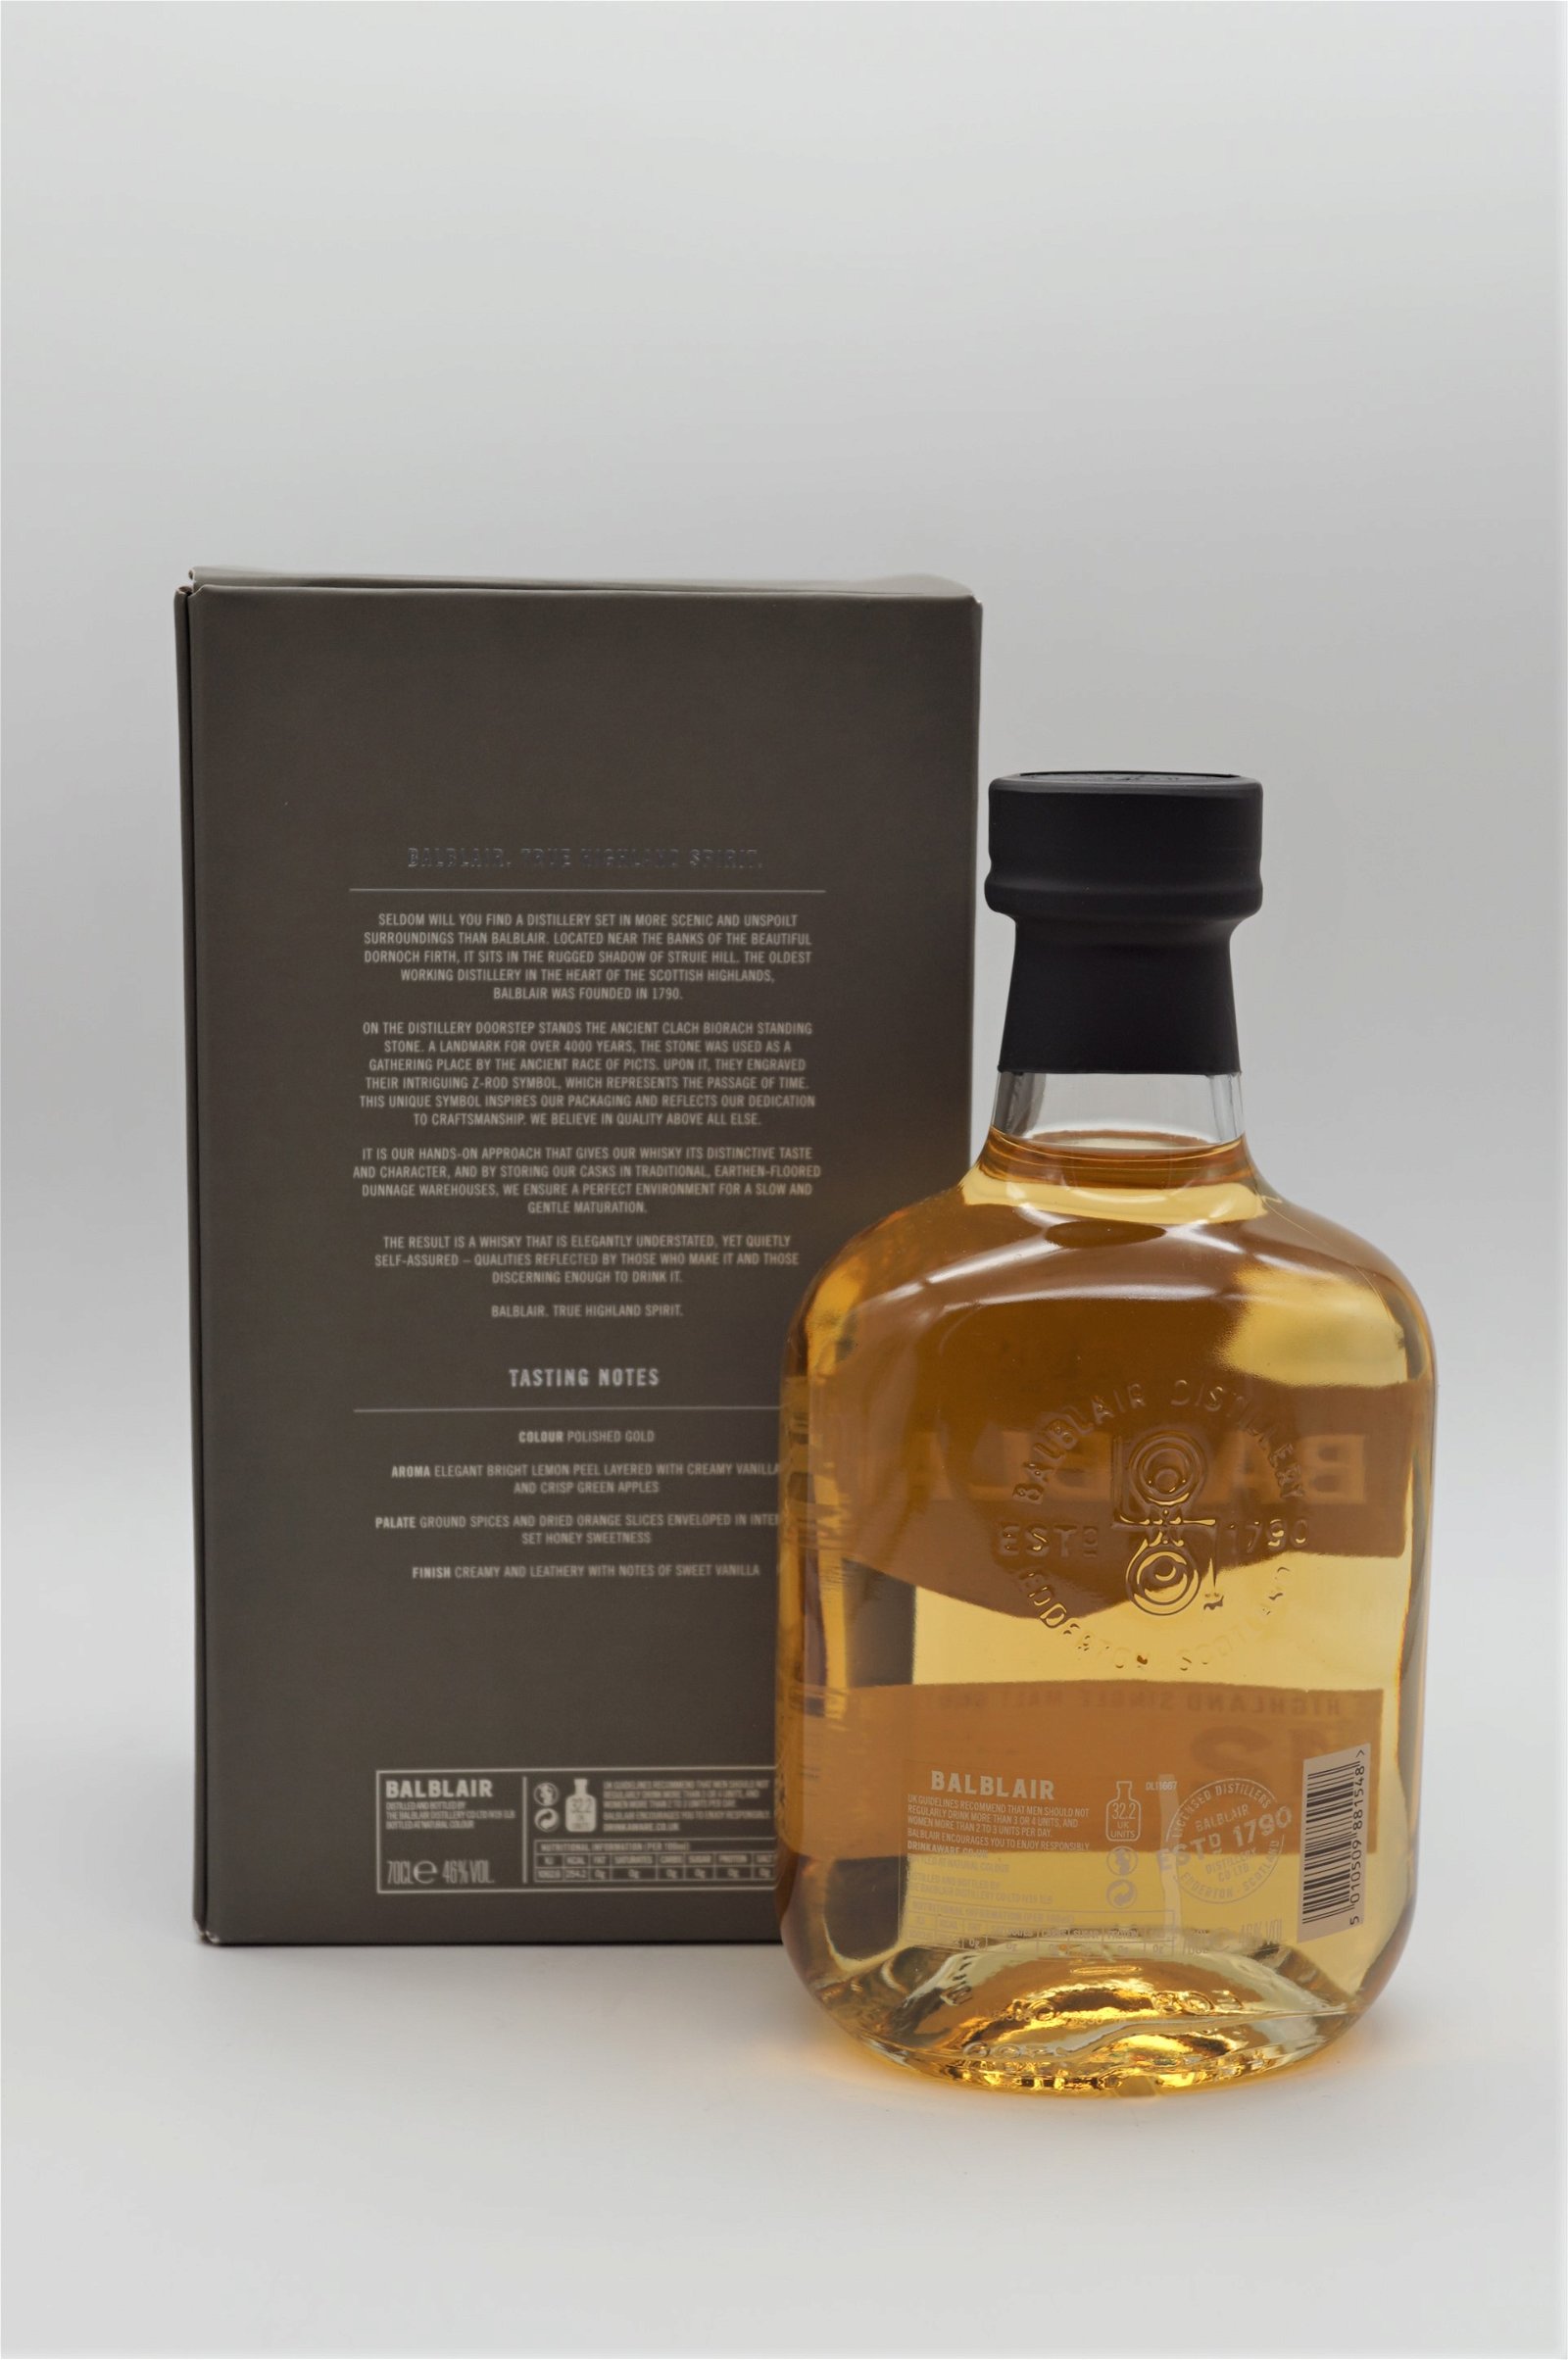 Balblair 12 Jahre Highland Single Malt Scotch Whisky